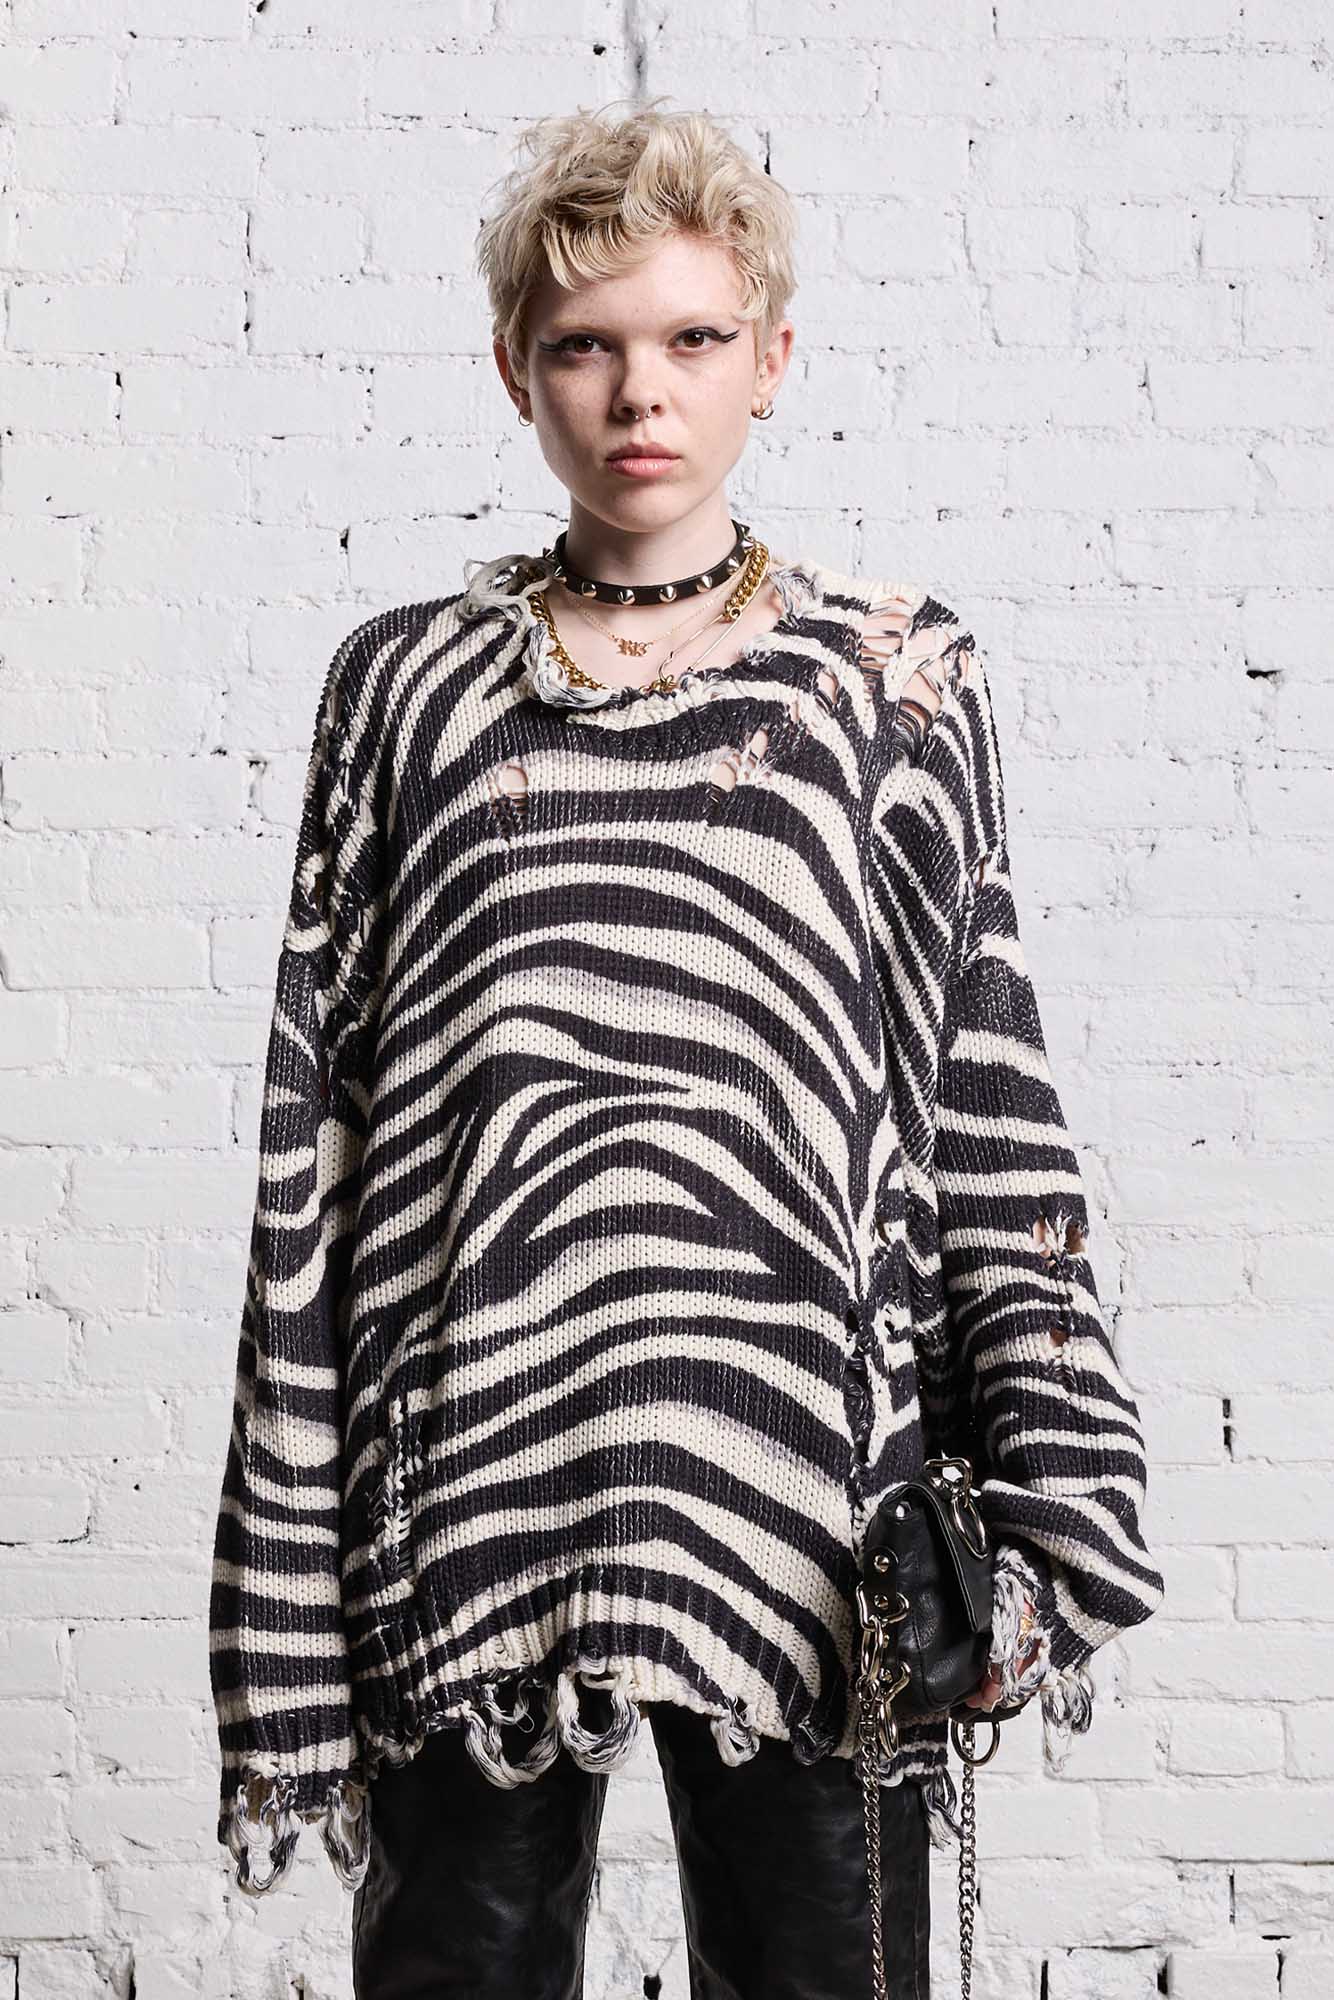 Zebra Print, Oversized Sweater